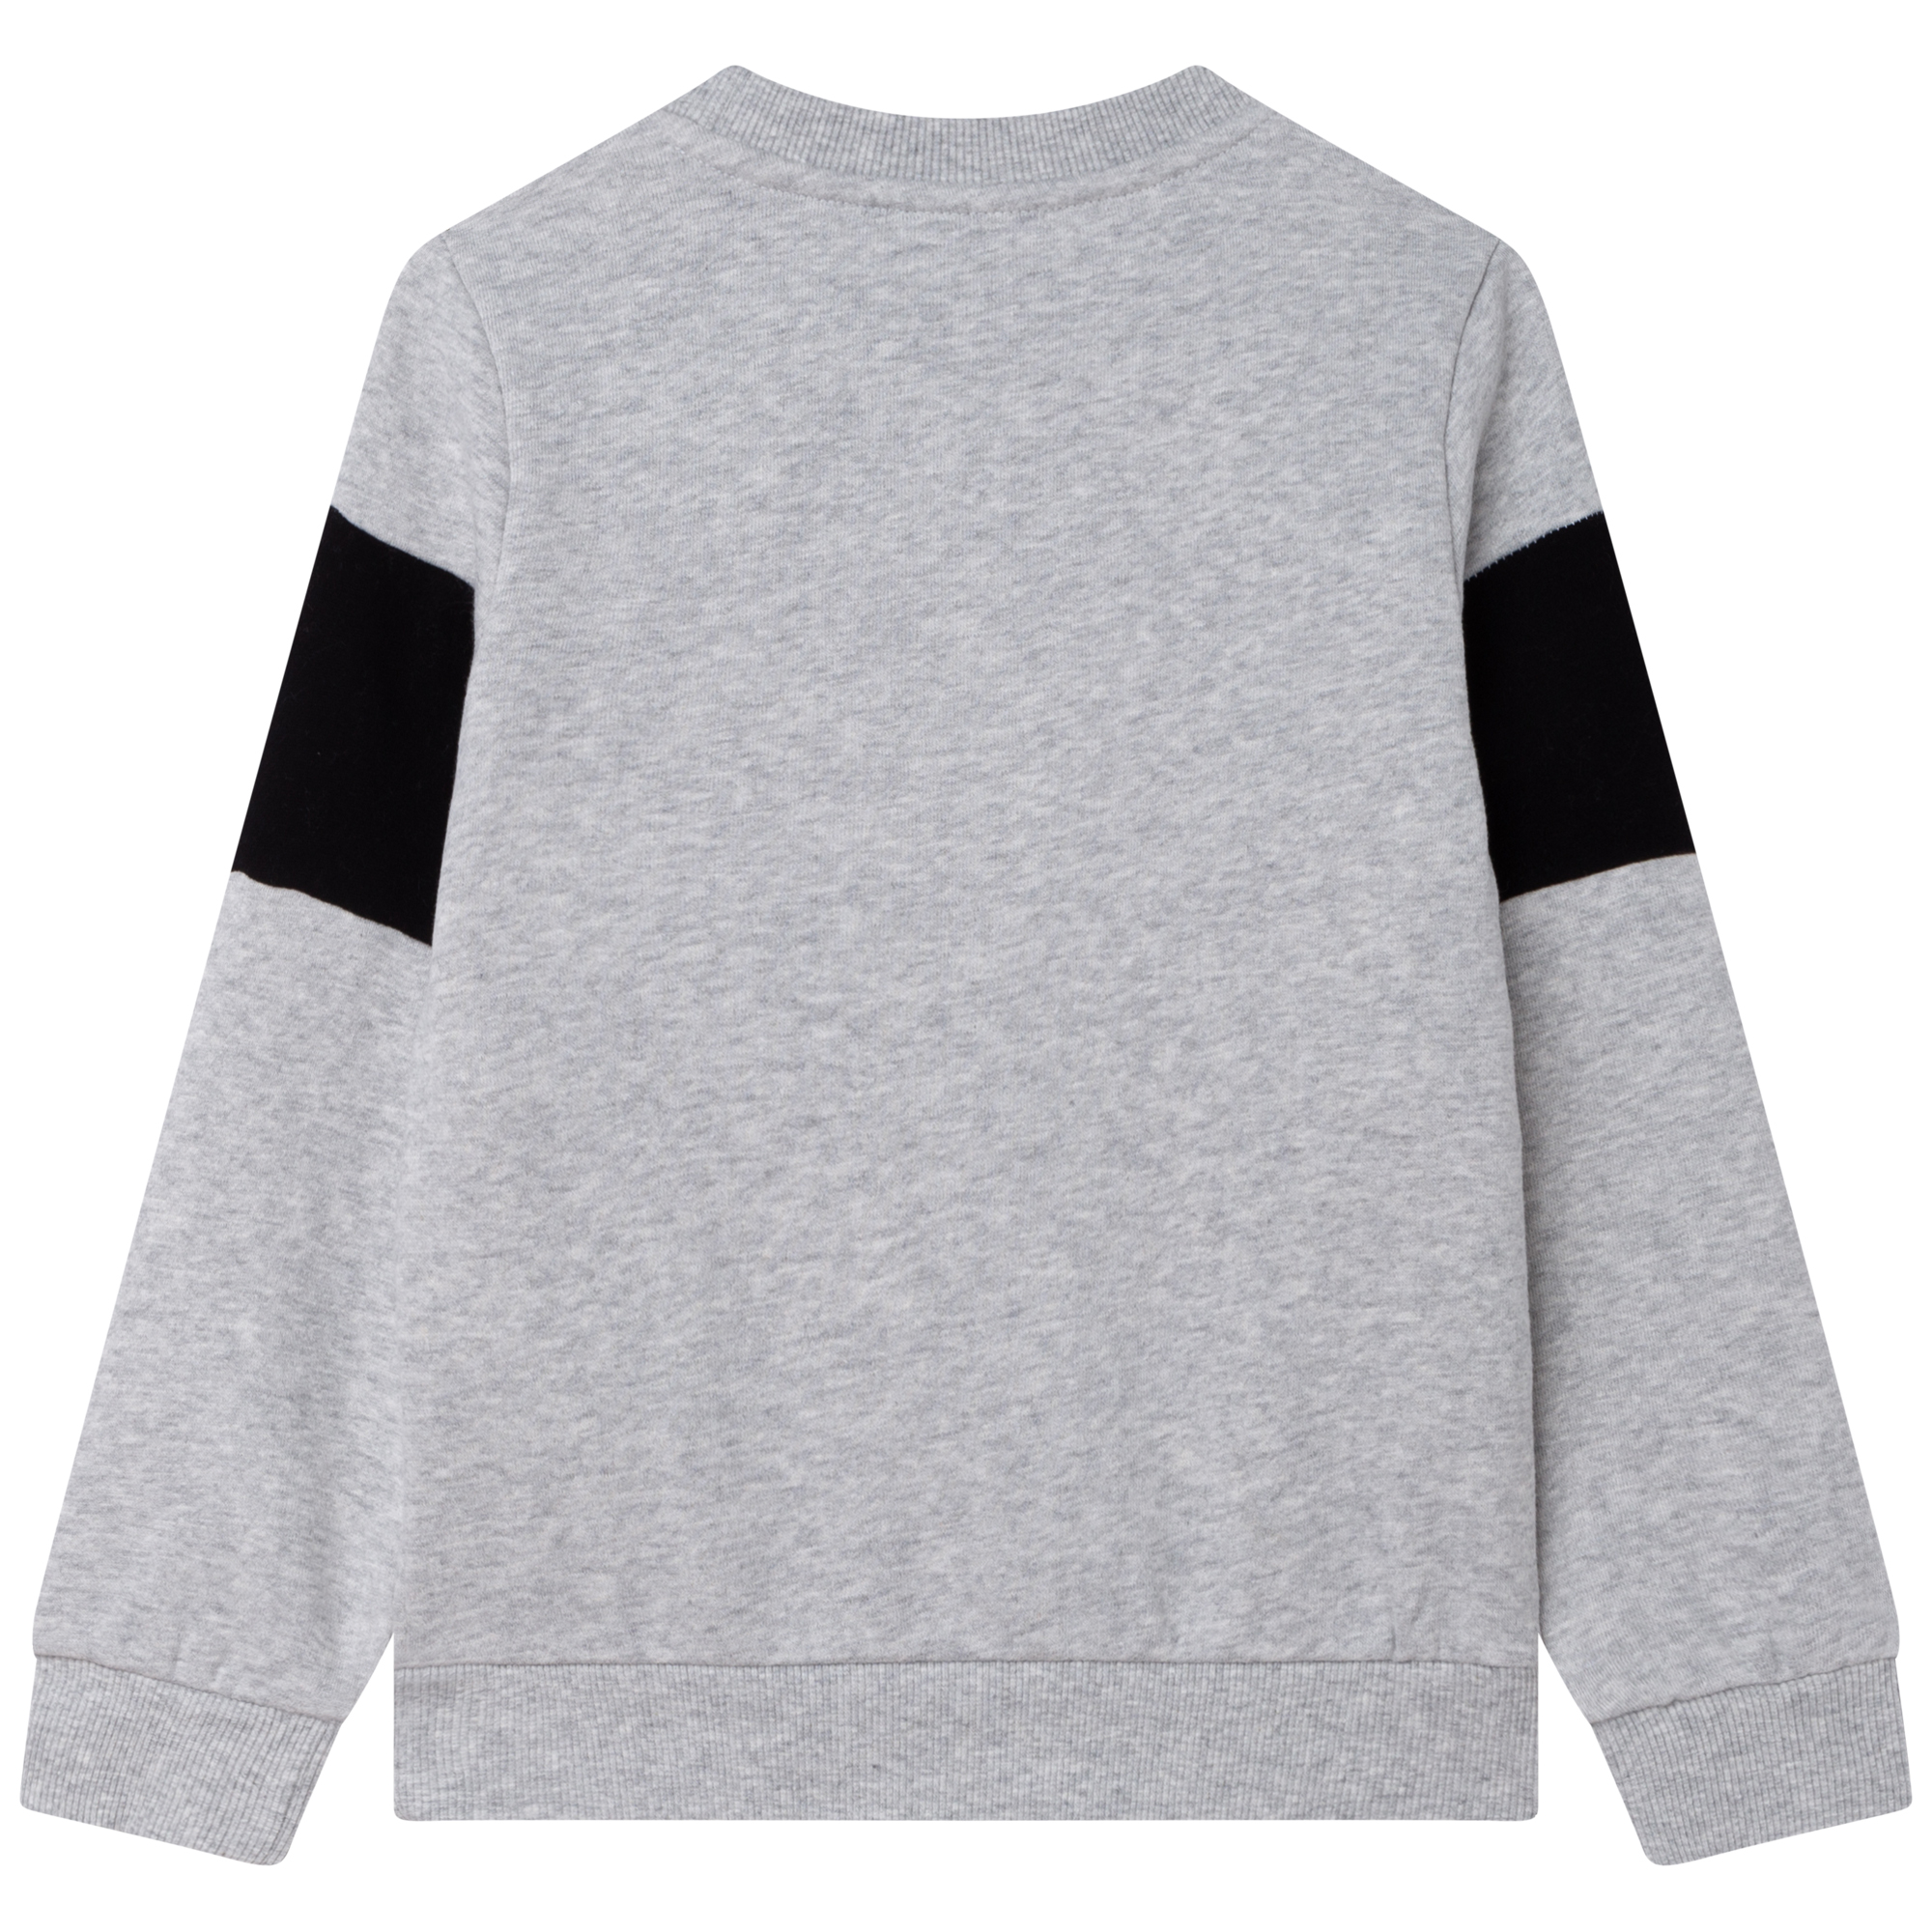 Brushed fleece sweatshirt TIMBERLAND for BOY